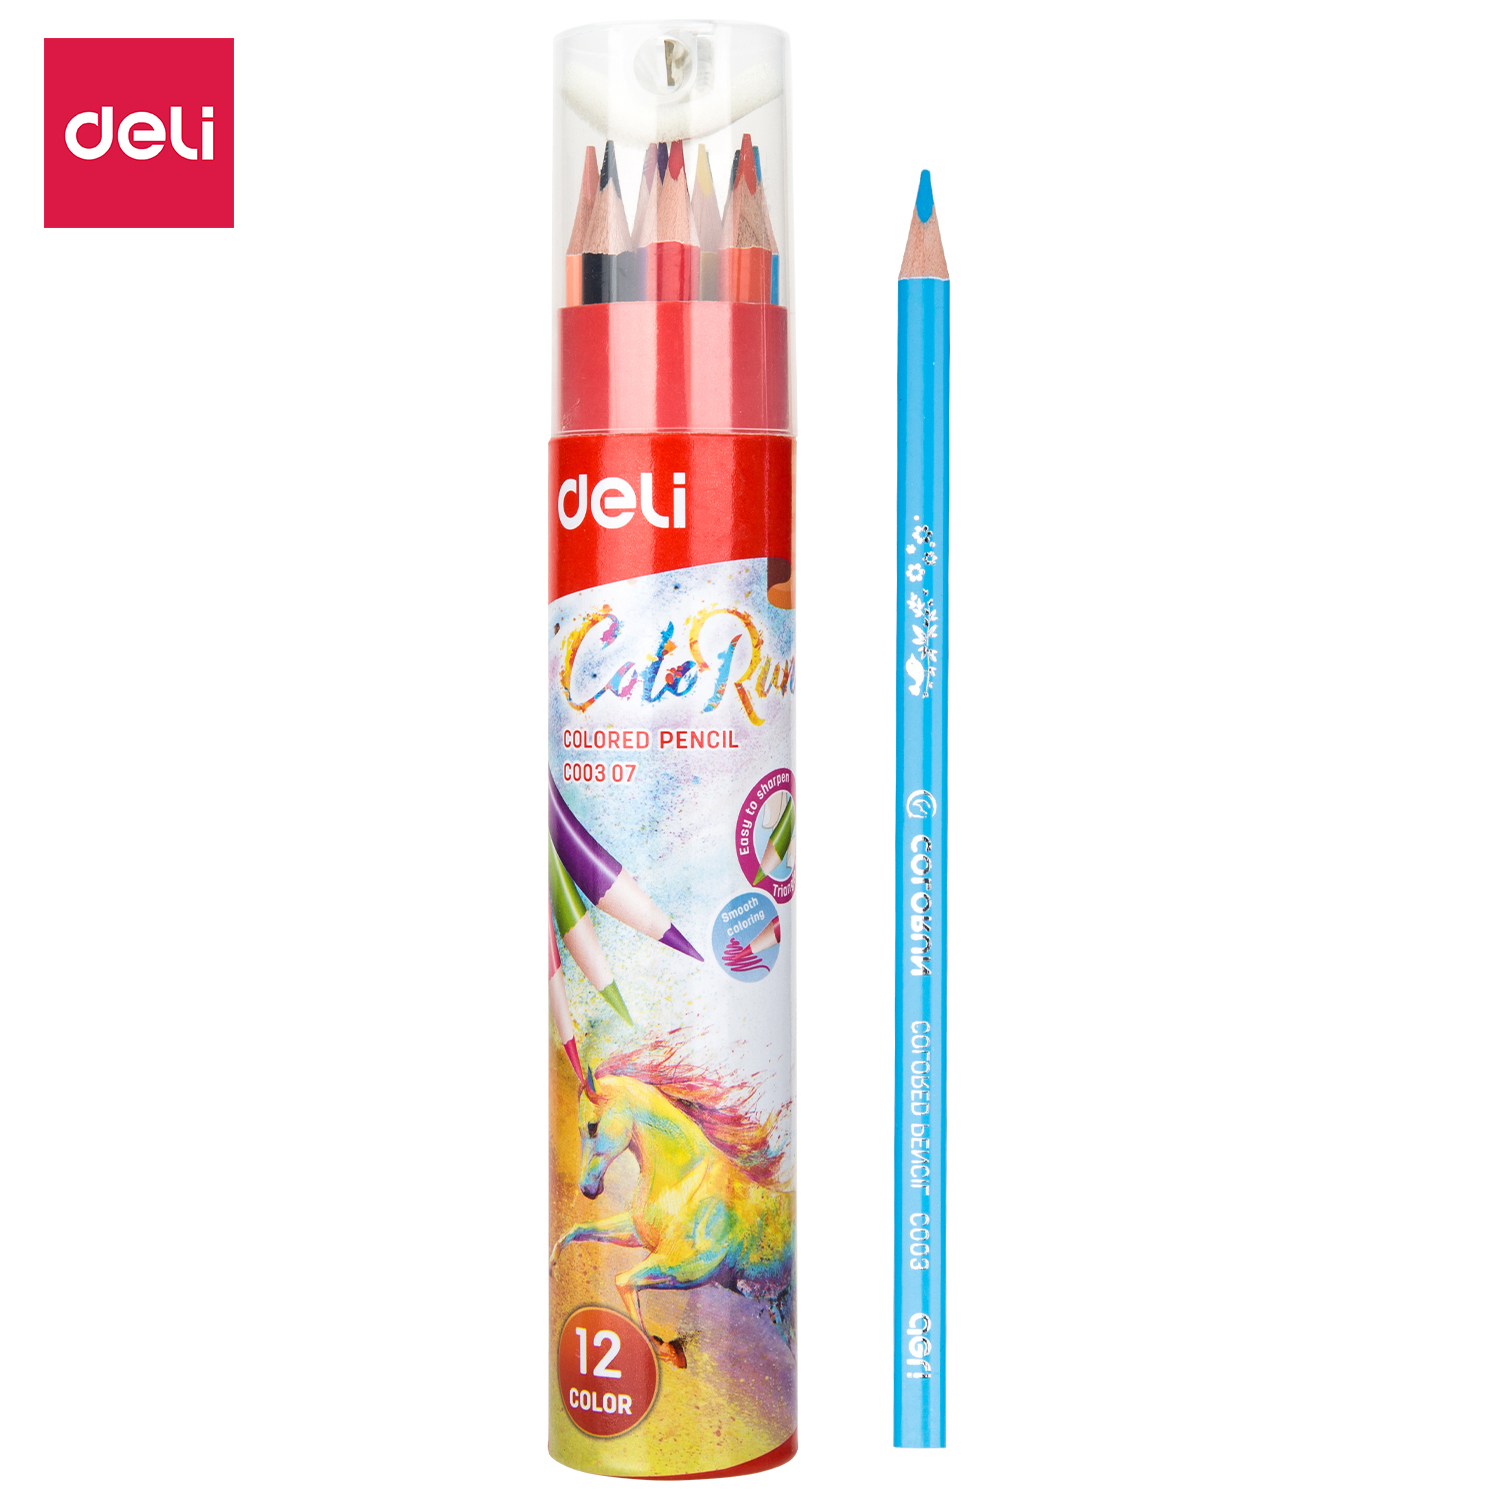 Deli-EC00307 Colored Pencil